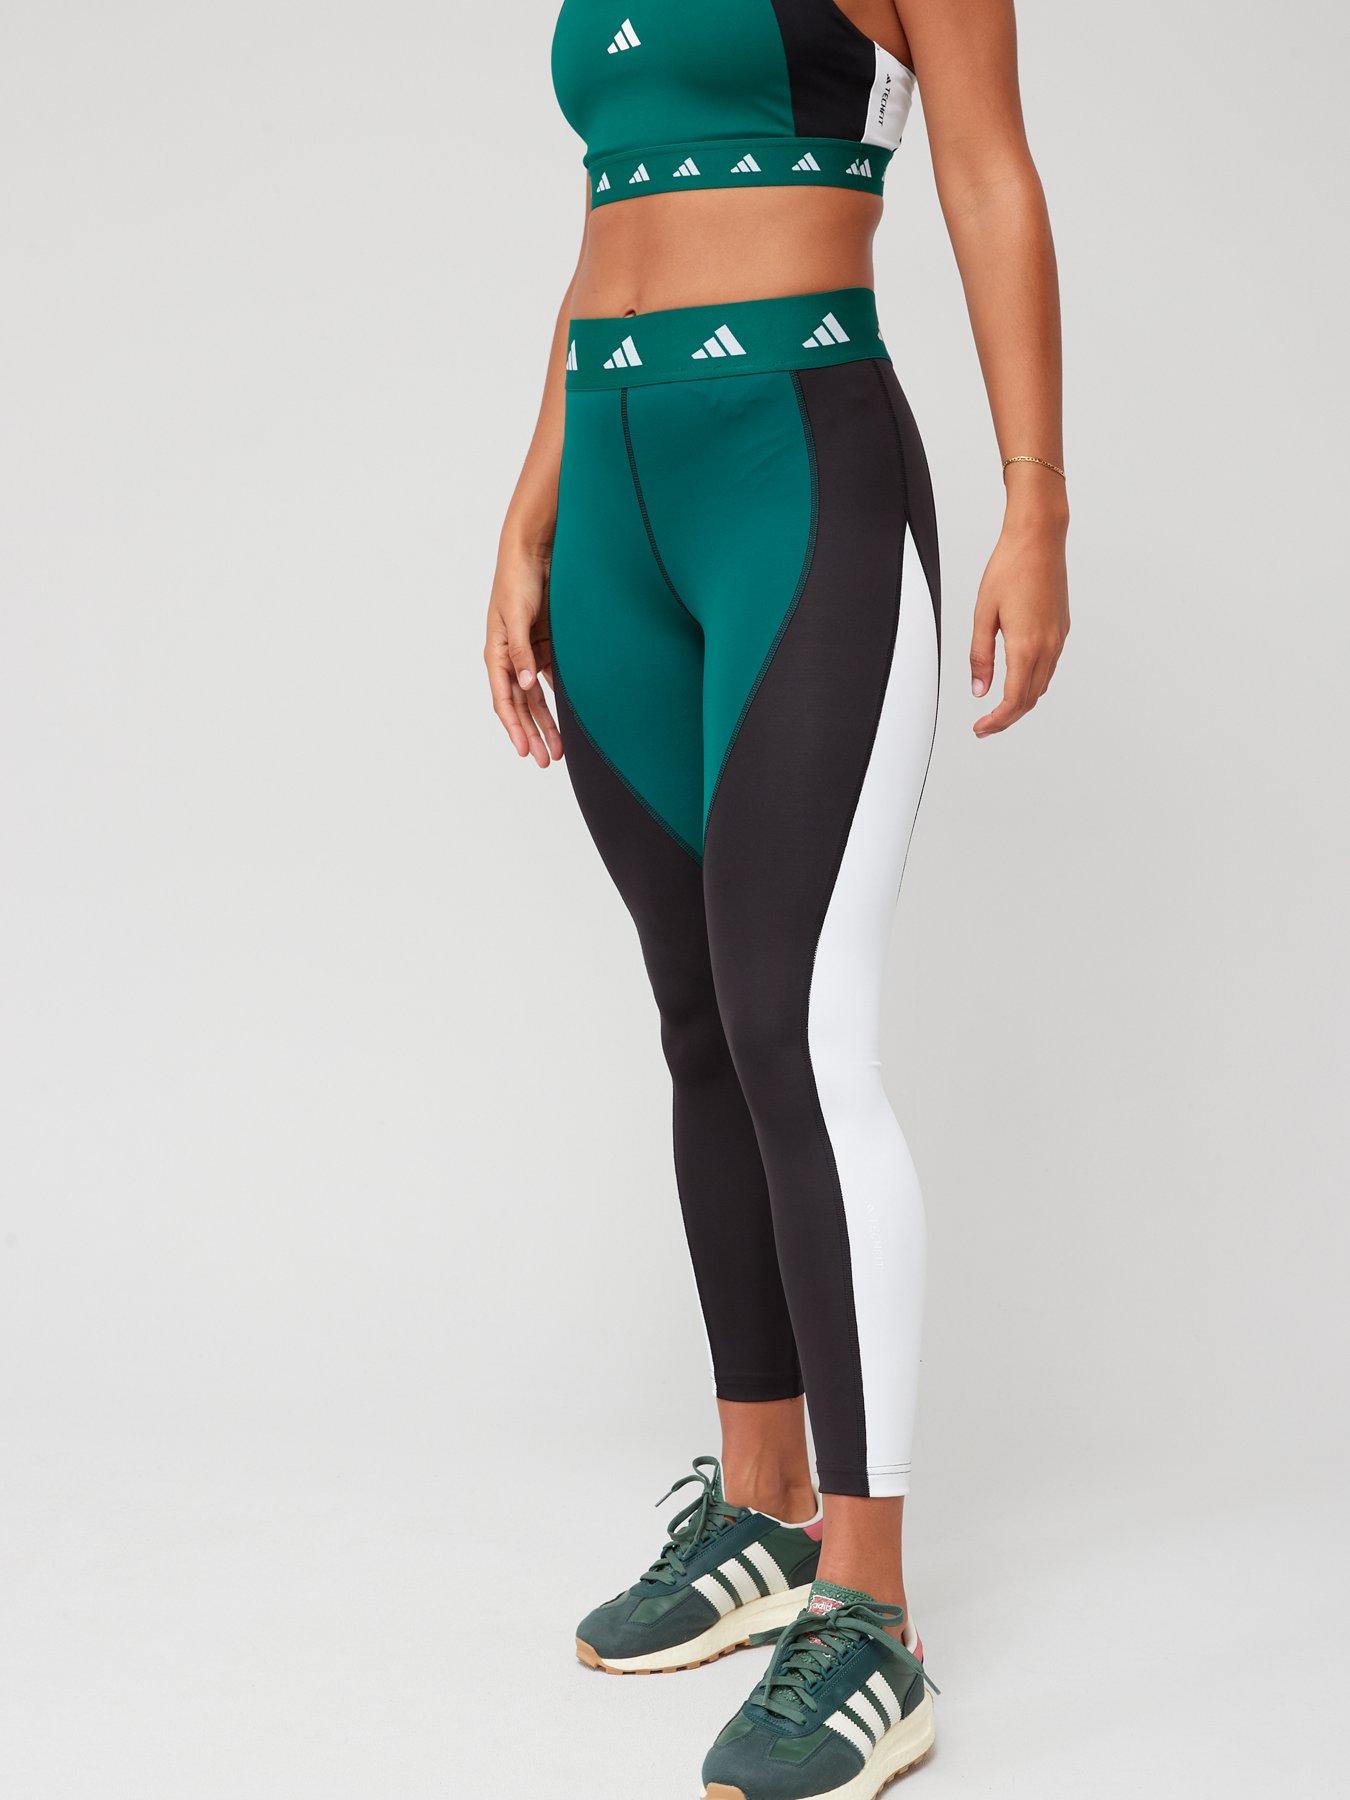 qqq, Pants & Jumpsuits, 00265 Womens 2 Piece Yoga Legging